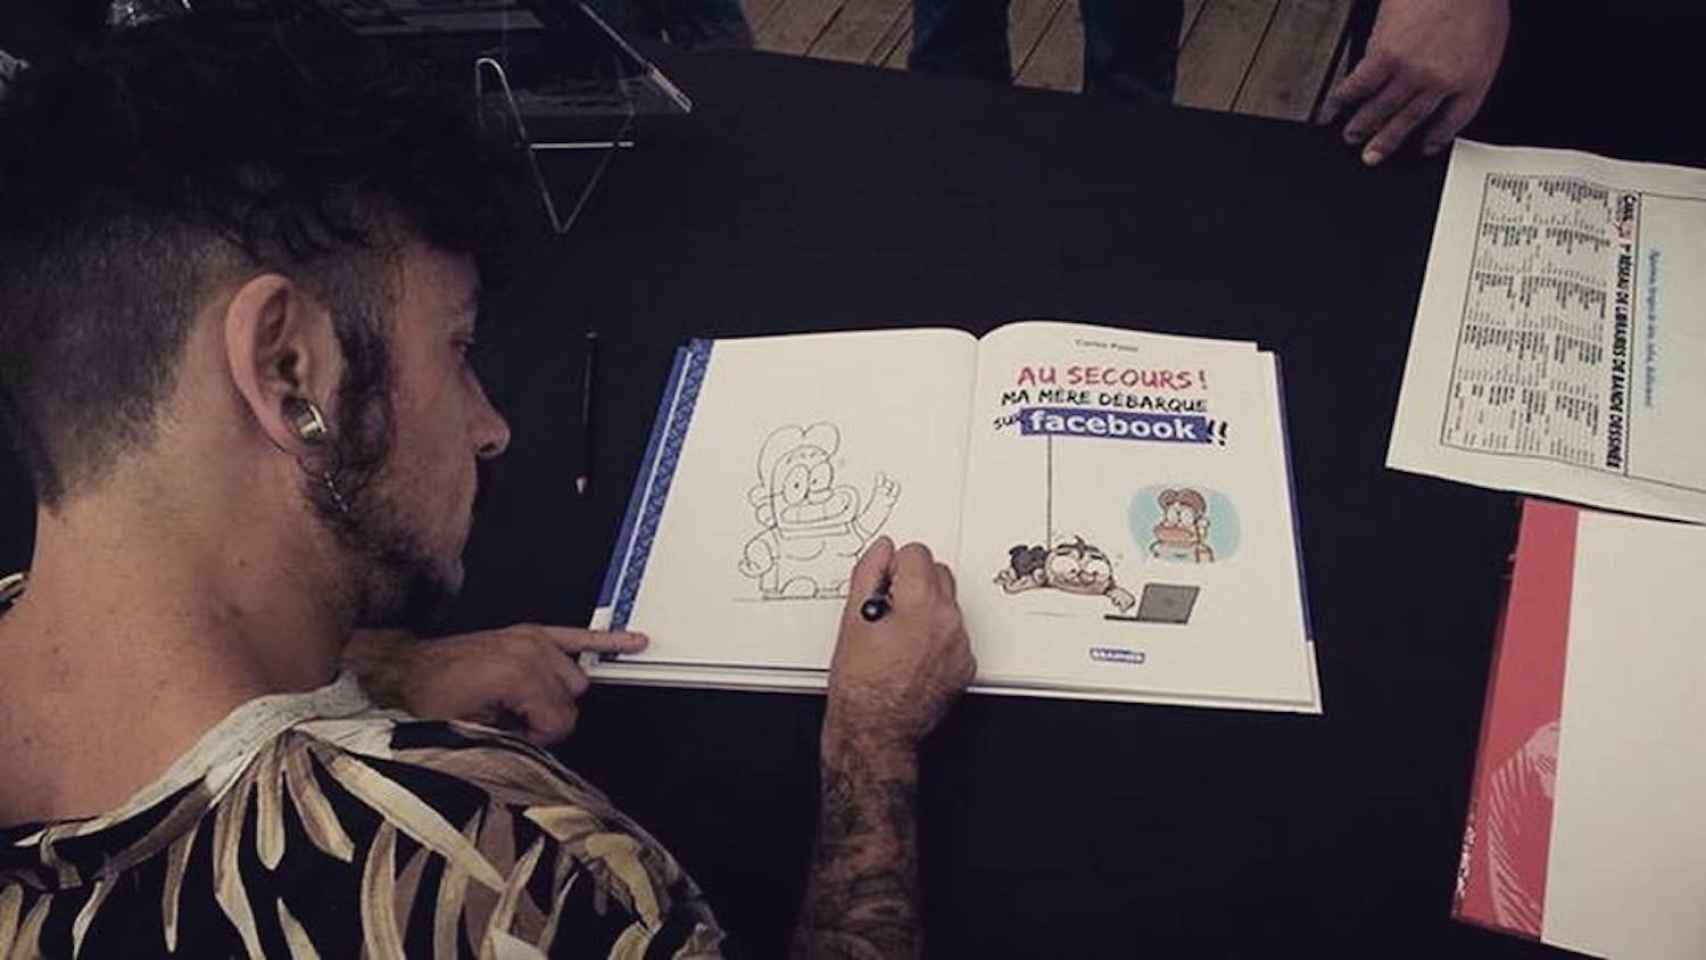 Carles Ponsí realiza un dibujo sobre un libro en una imagen de archivo / FACEBOOK